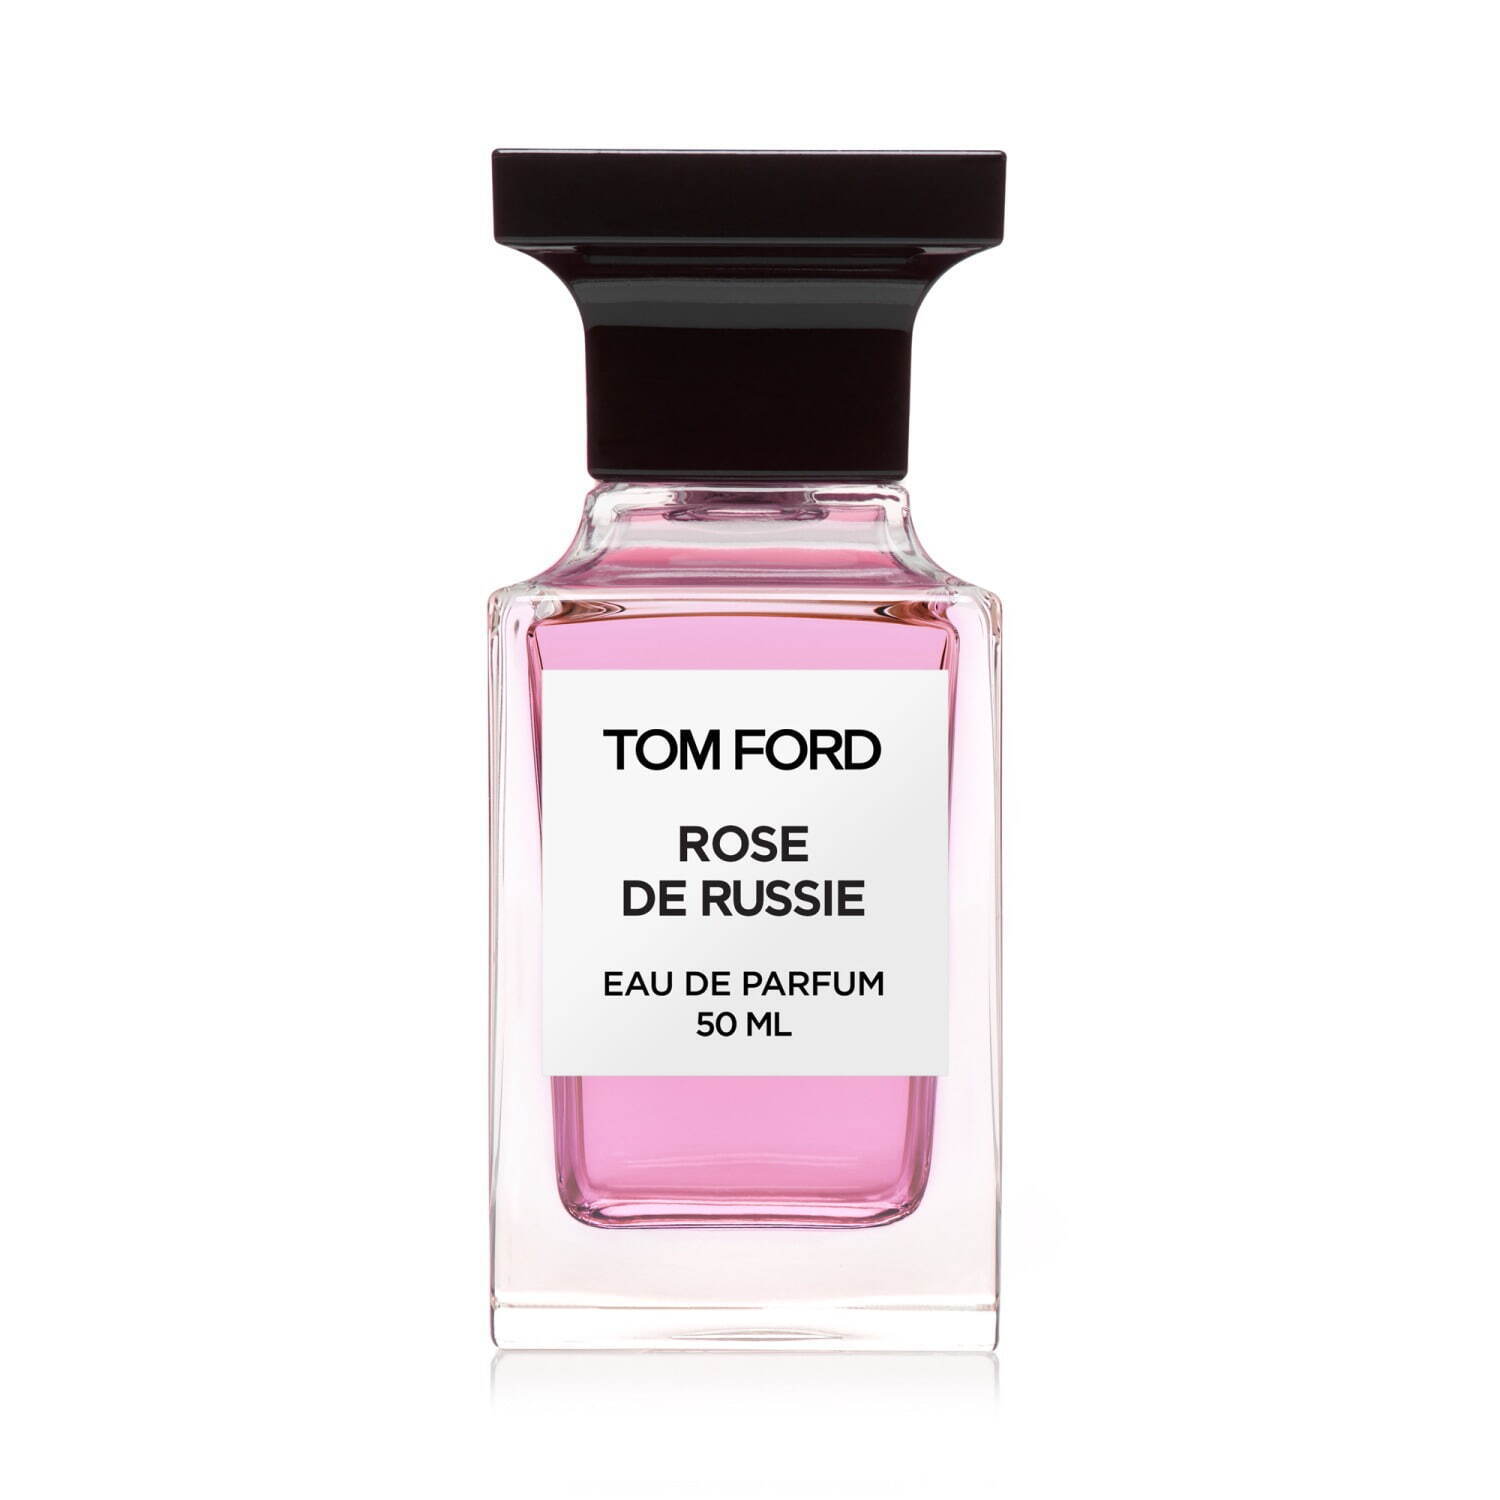 激安価格の香水トム フォード ビューティ「ローズ」のフレグランス、親密で官能的な